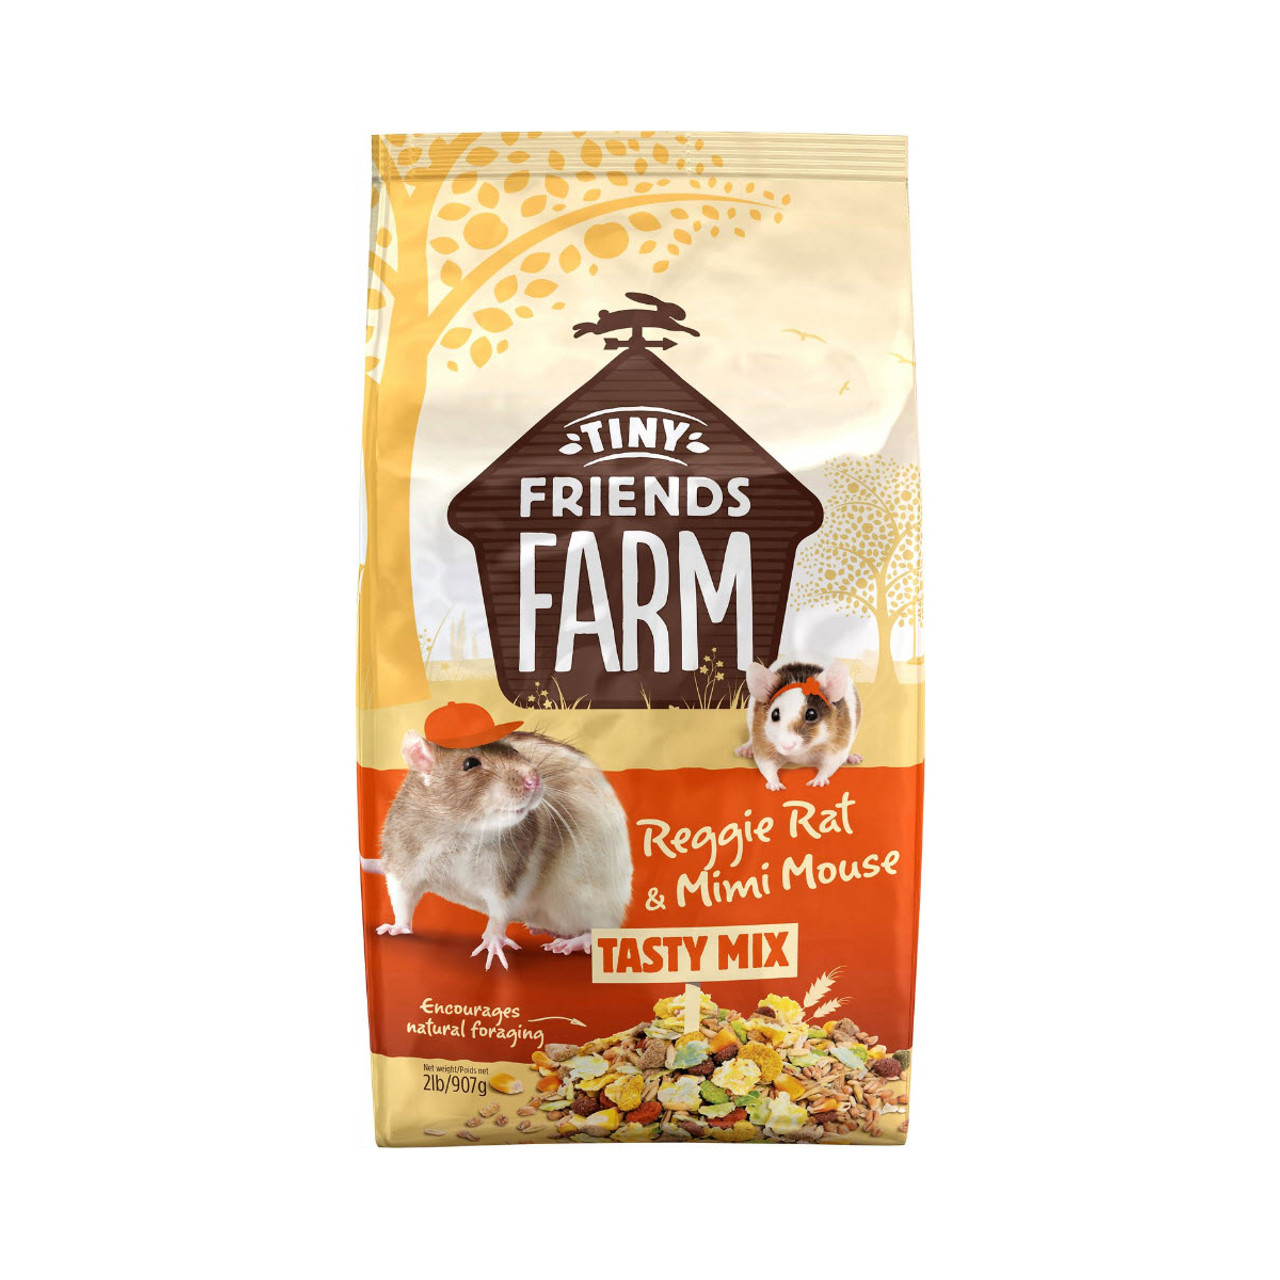 Tiny Friends Farm Reggie Rat & Mimi Mouse Tasty Mix Food